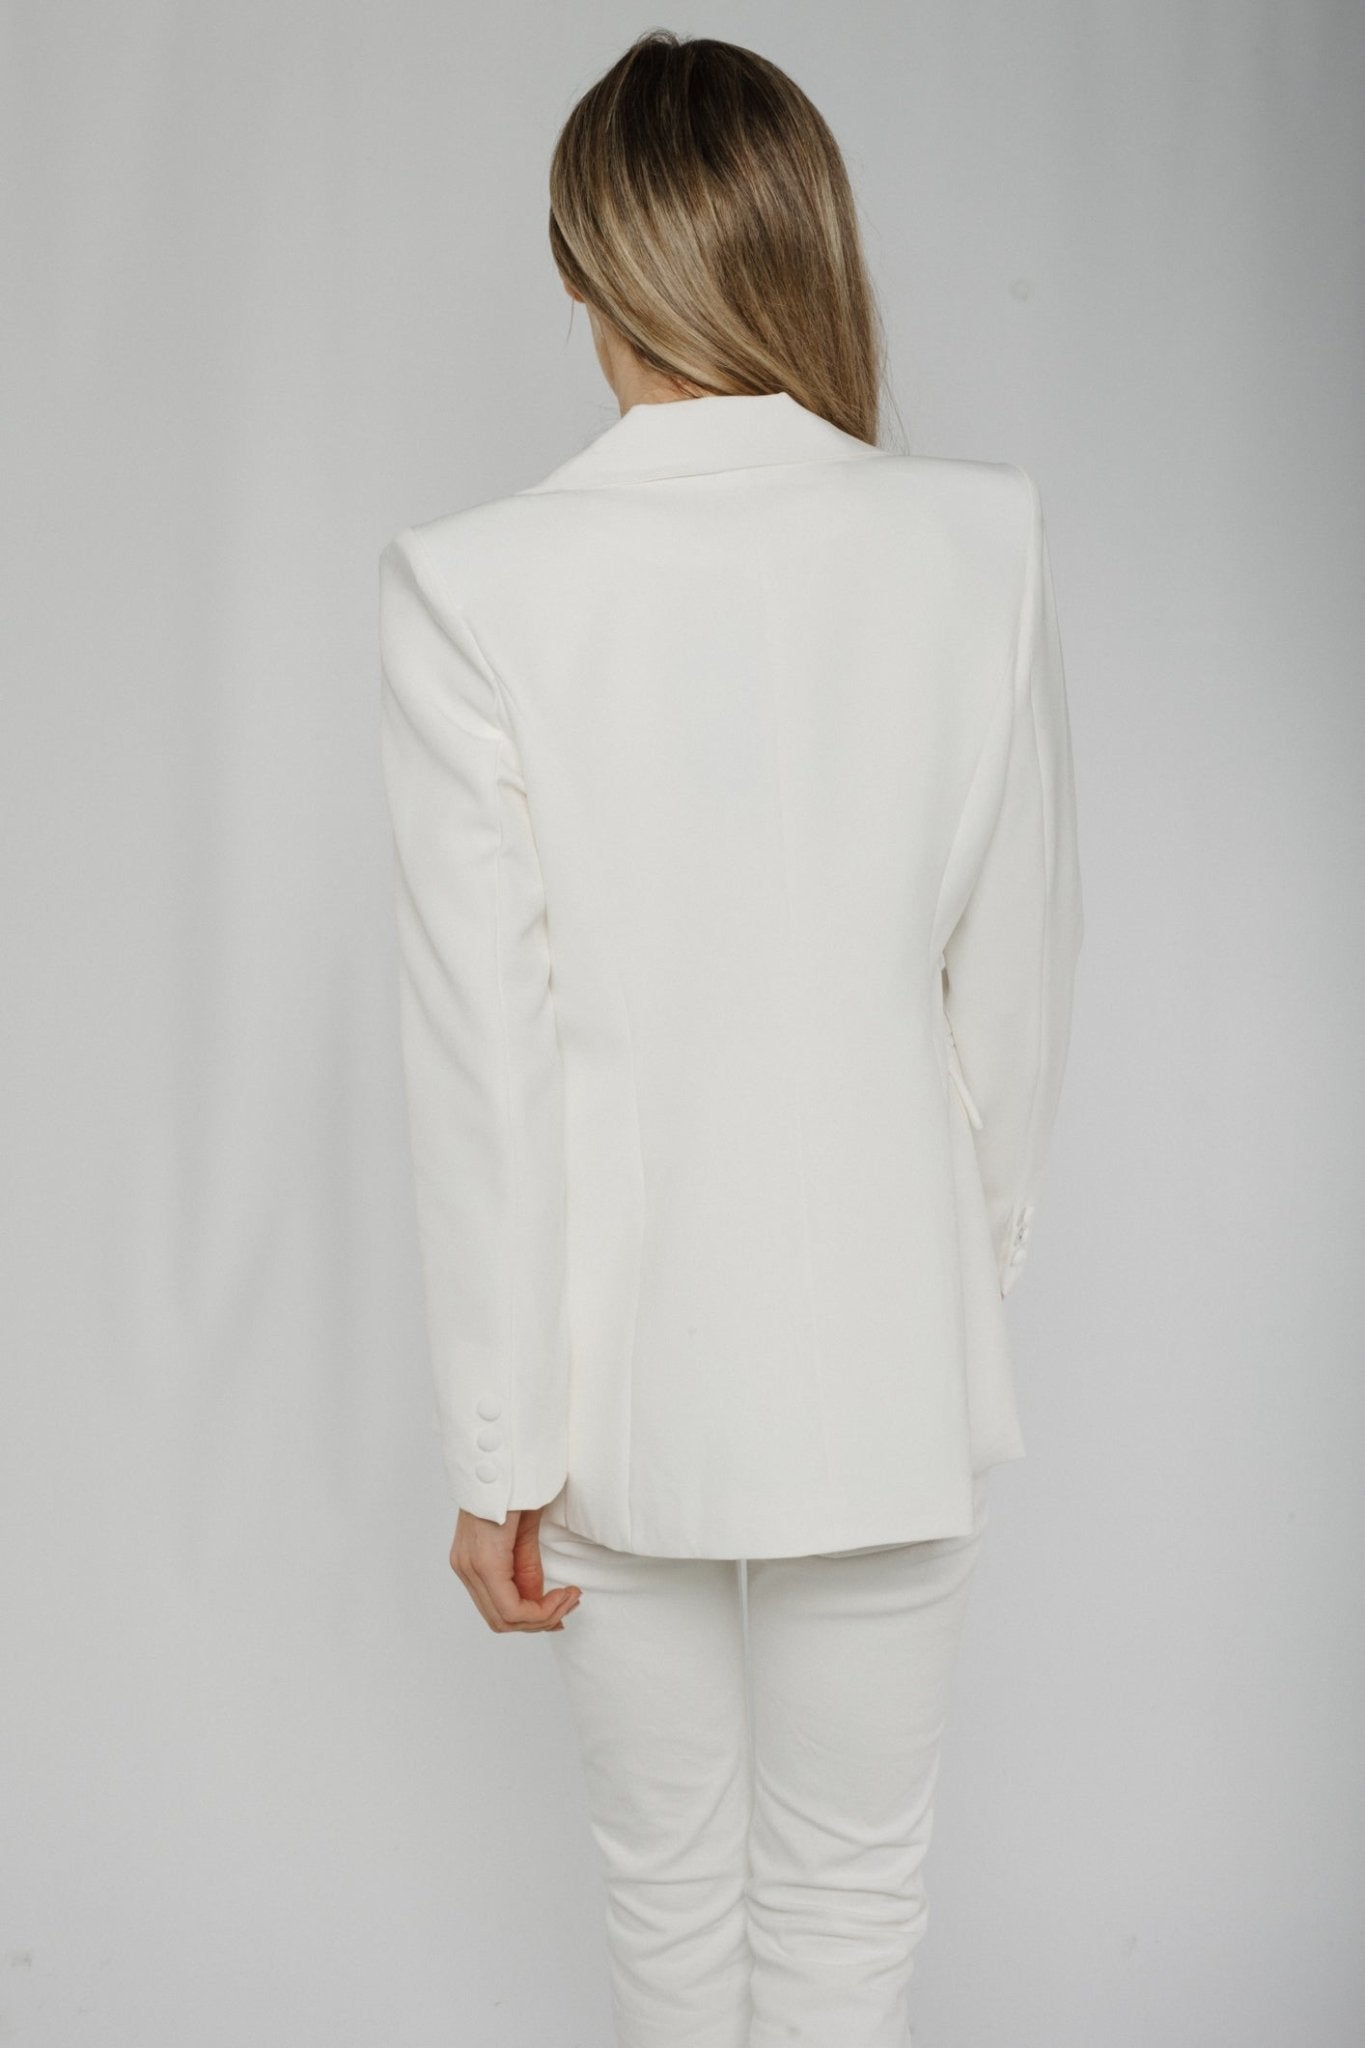 Arabella Blazer In White - The Walk in Wardrobe